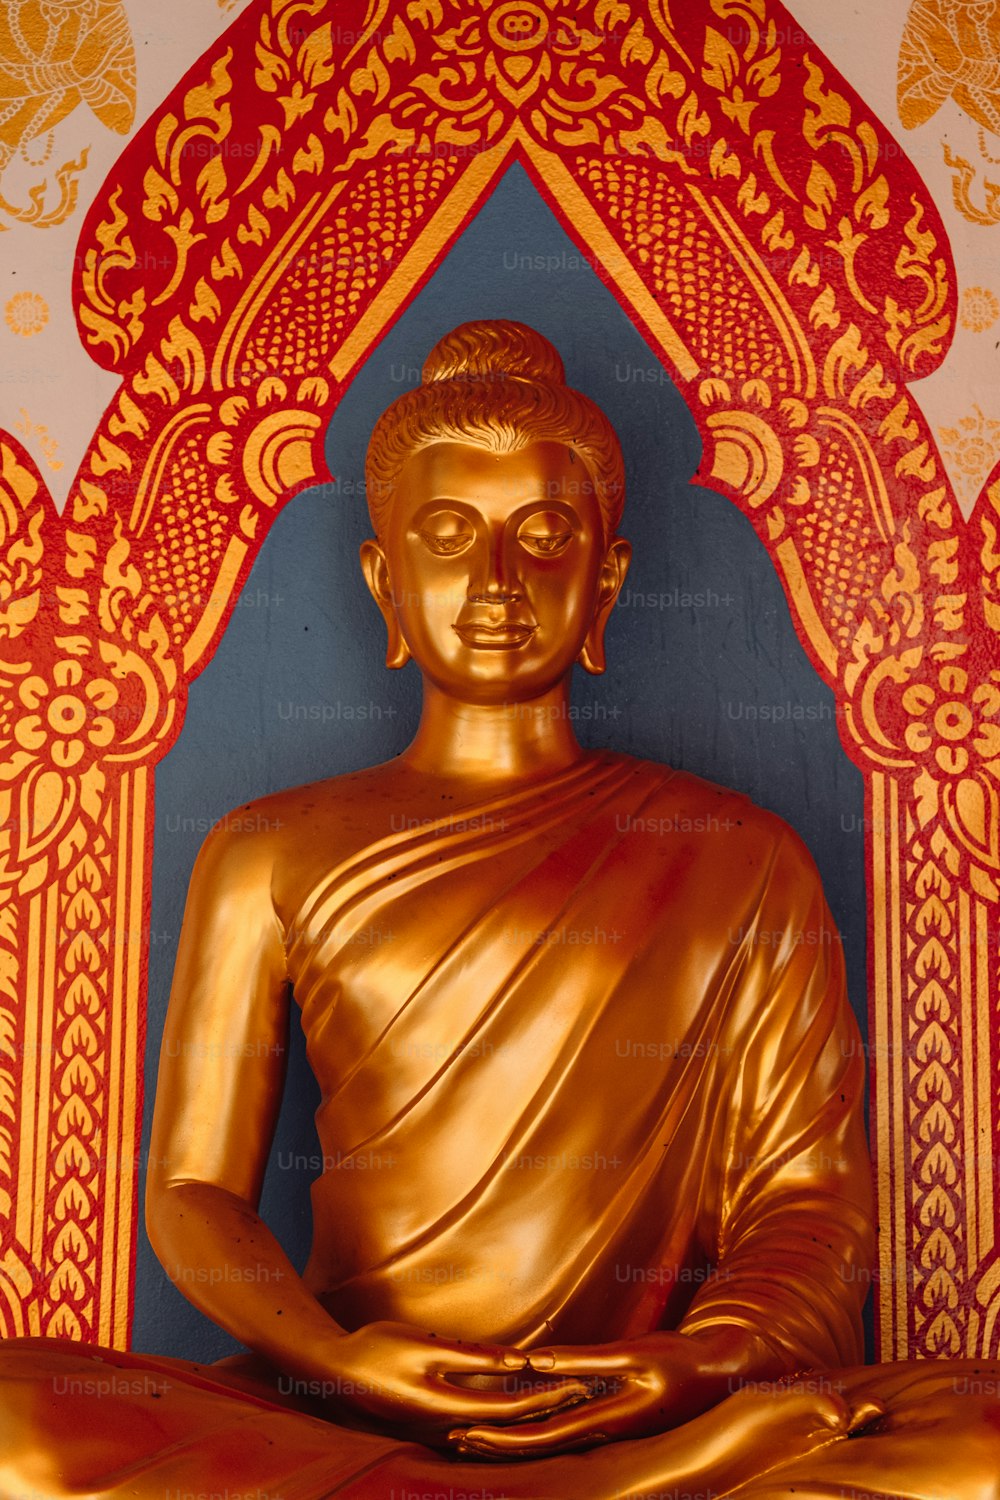 Eine goldene Buddha-Statue vor einer rot-goldenen Wand